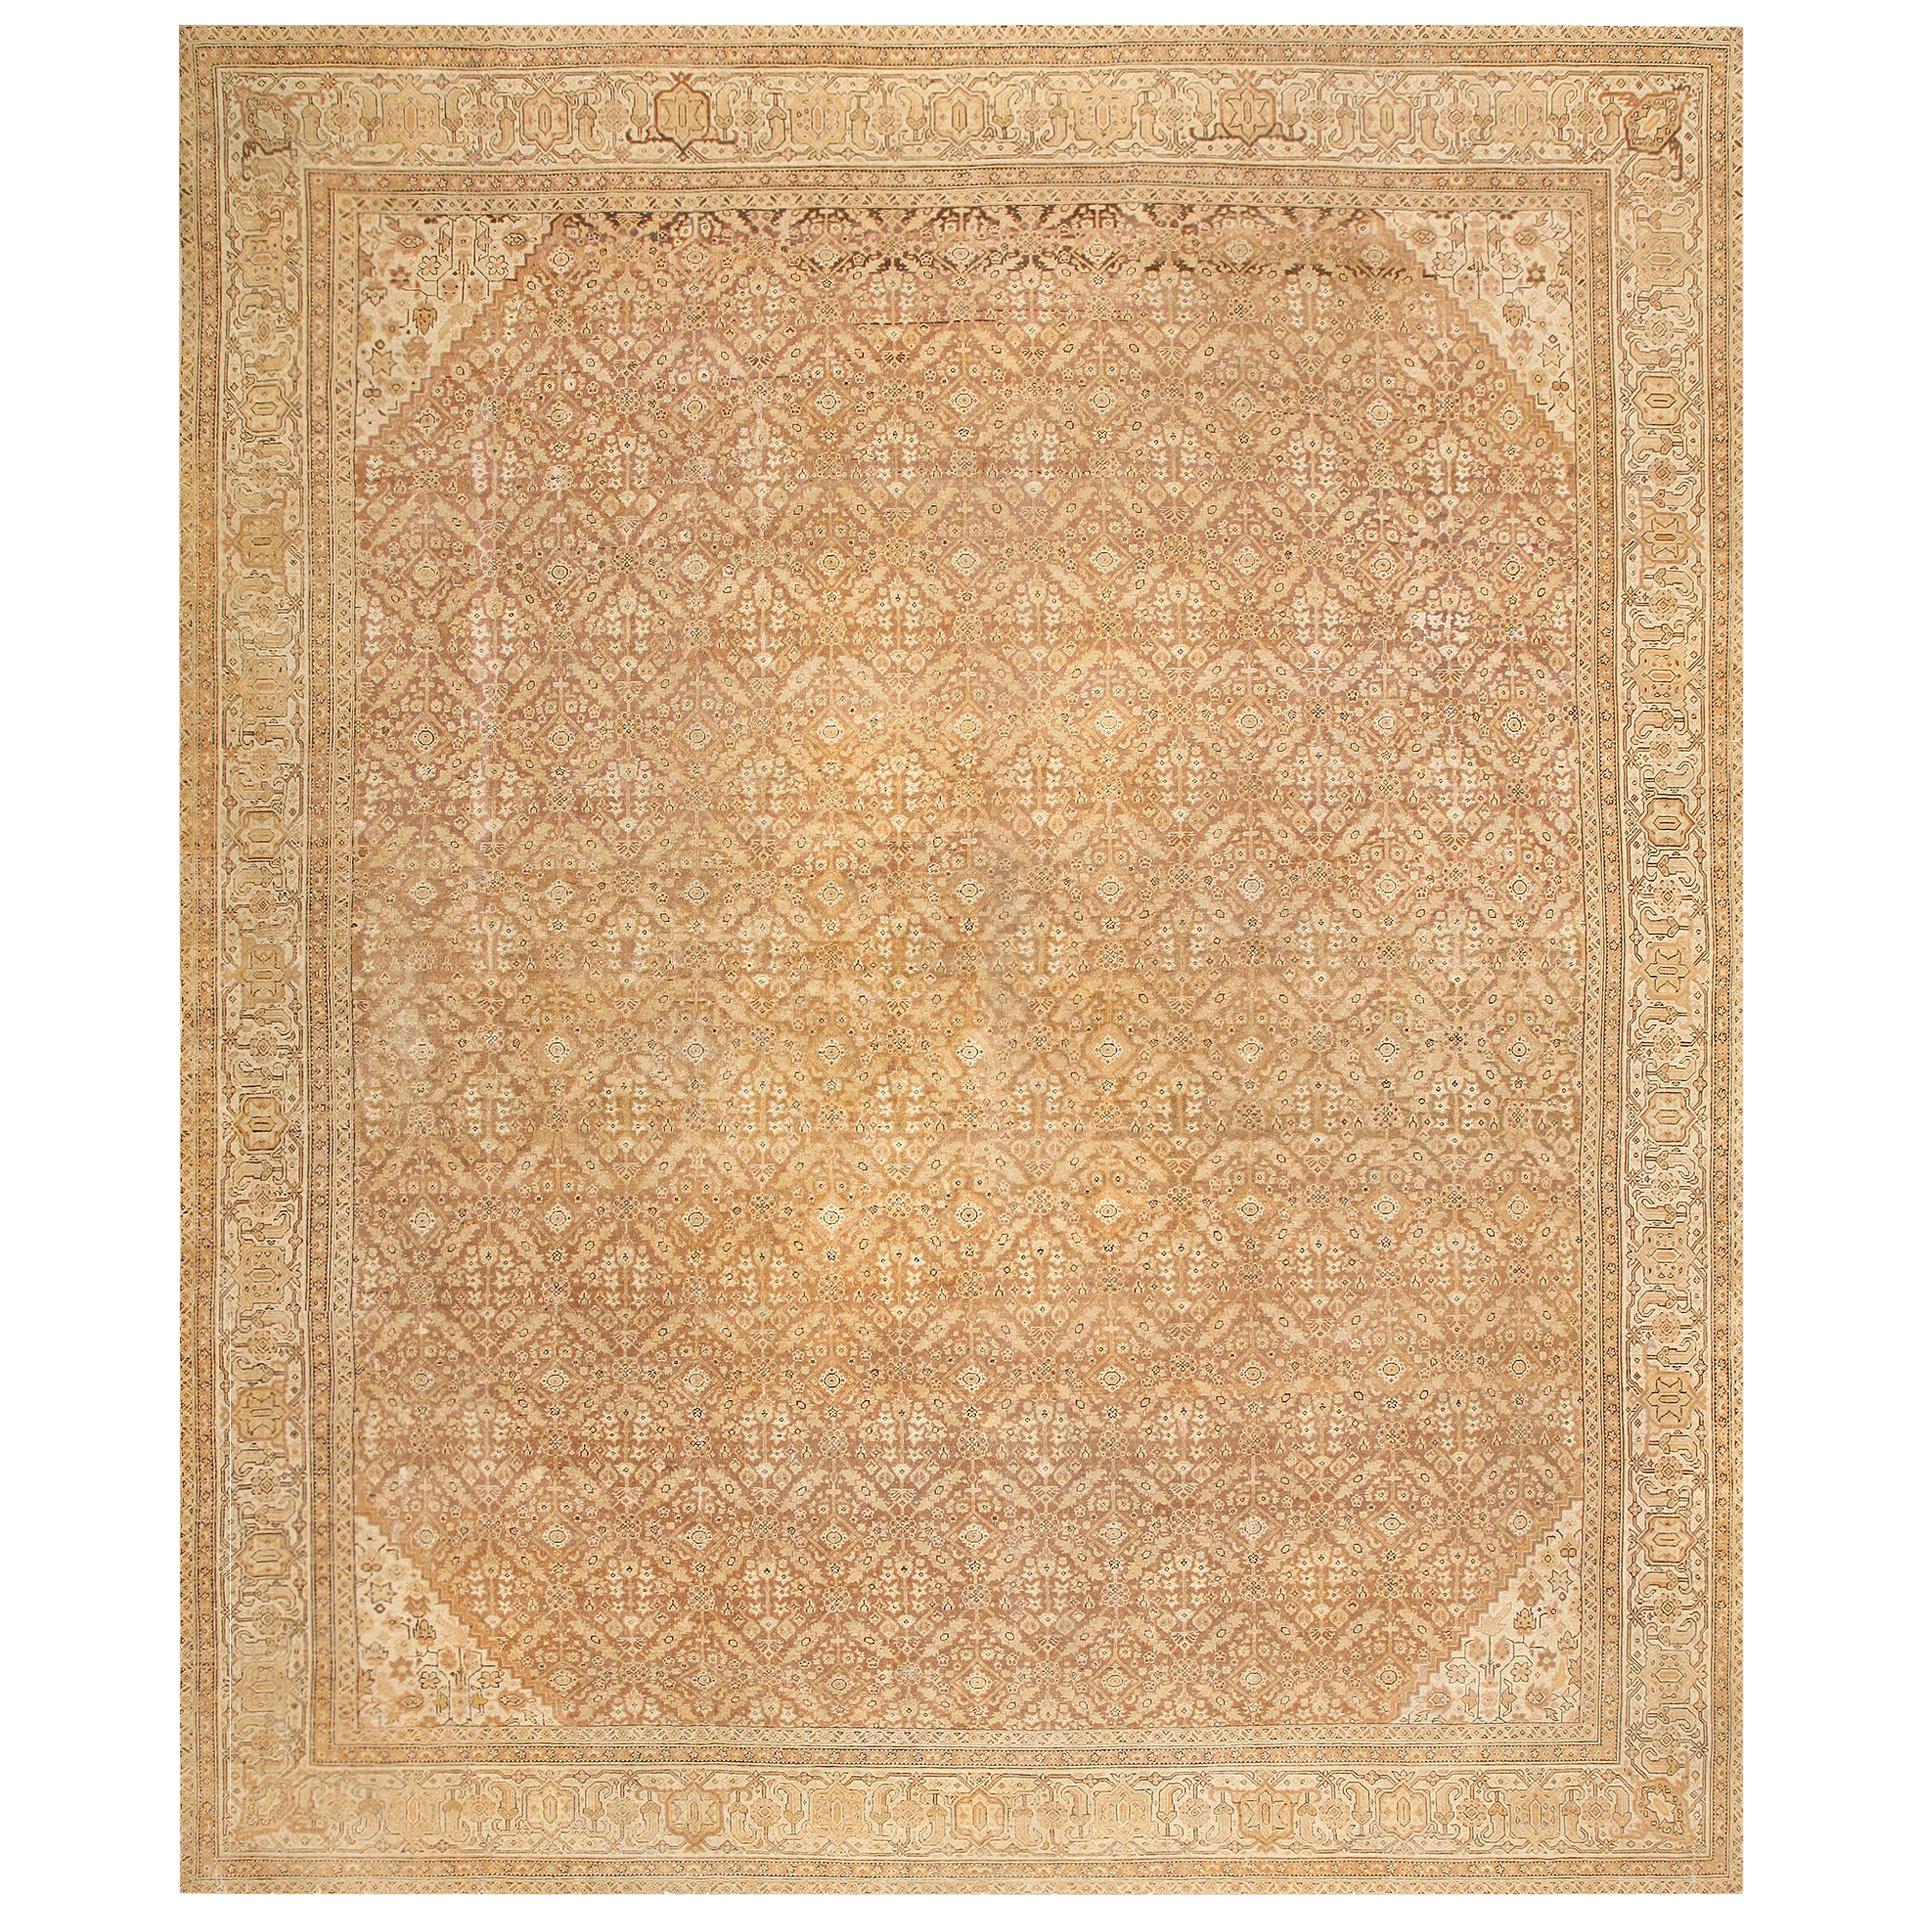 Antiker indischer Amritsar-Teppich. Größe: 12 ft 6 in x 14 ft 10 in